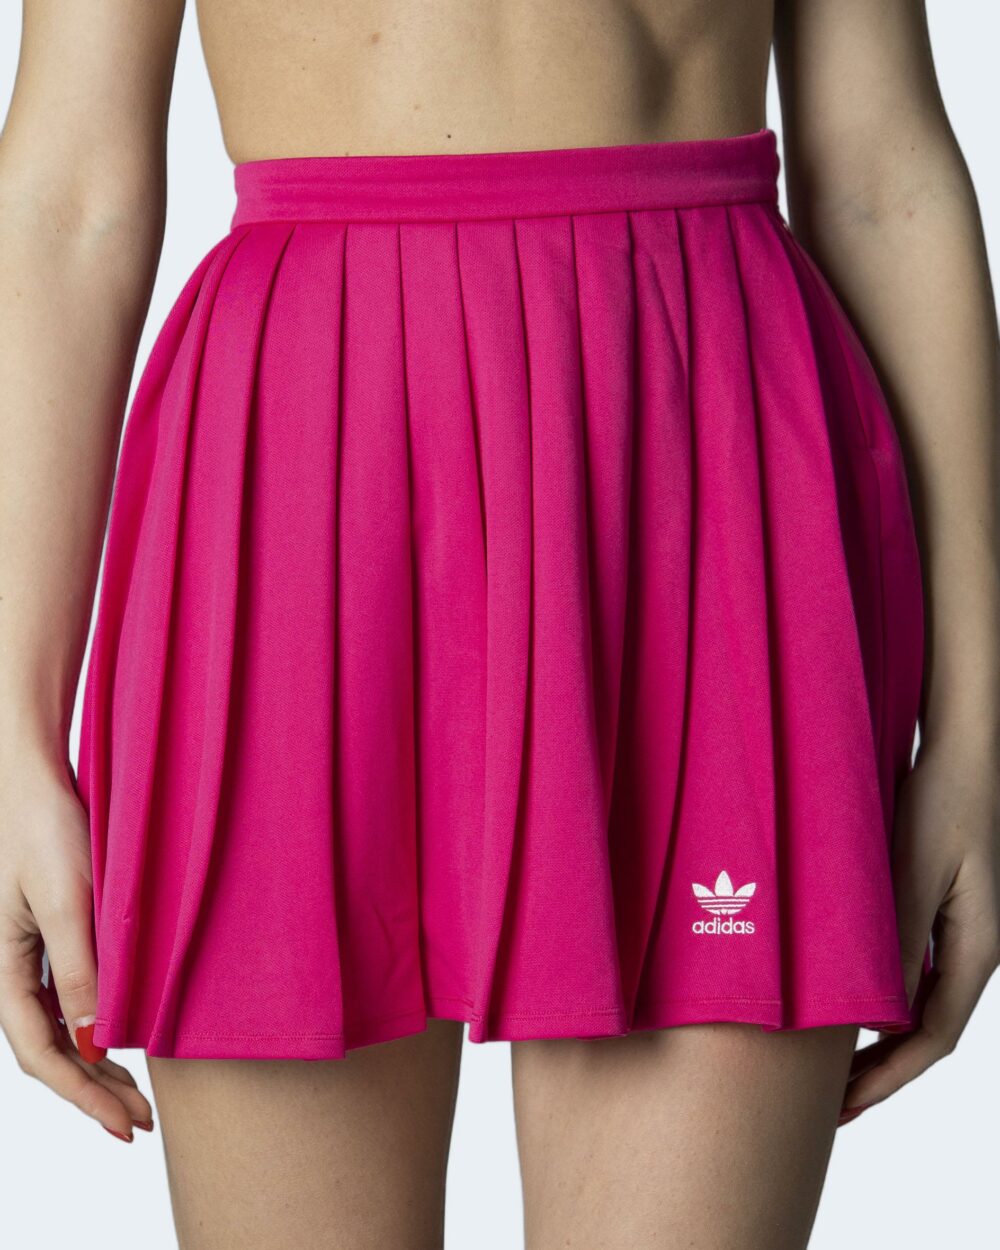 Minigonna Adidas skirt Fuxia - Foto 1